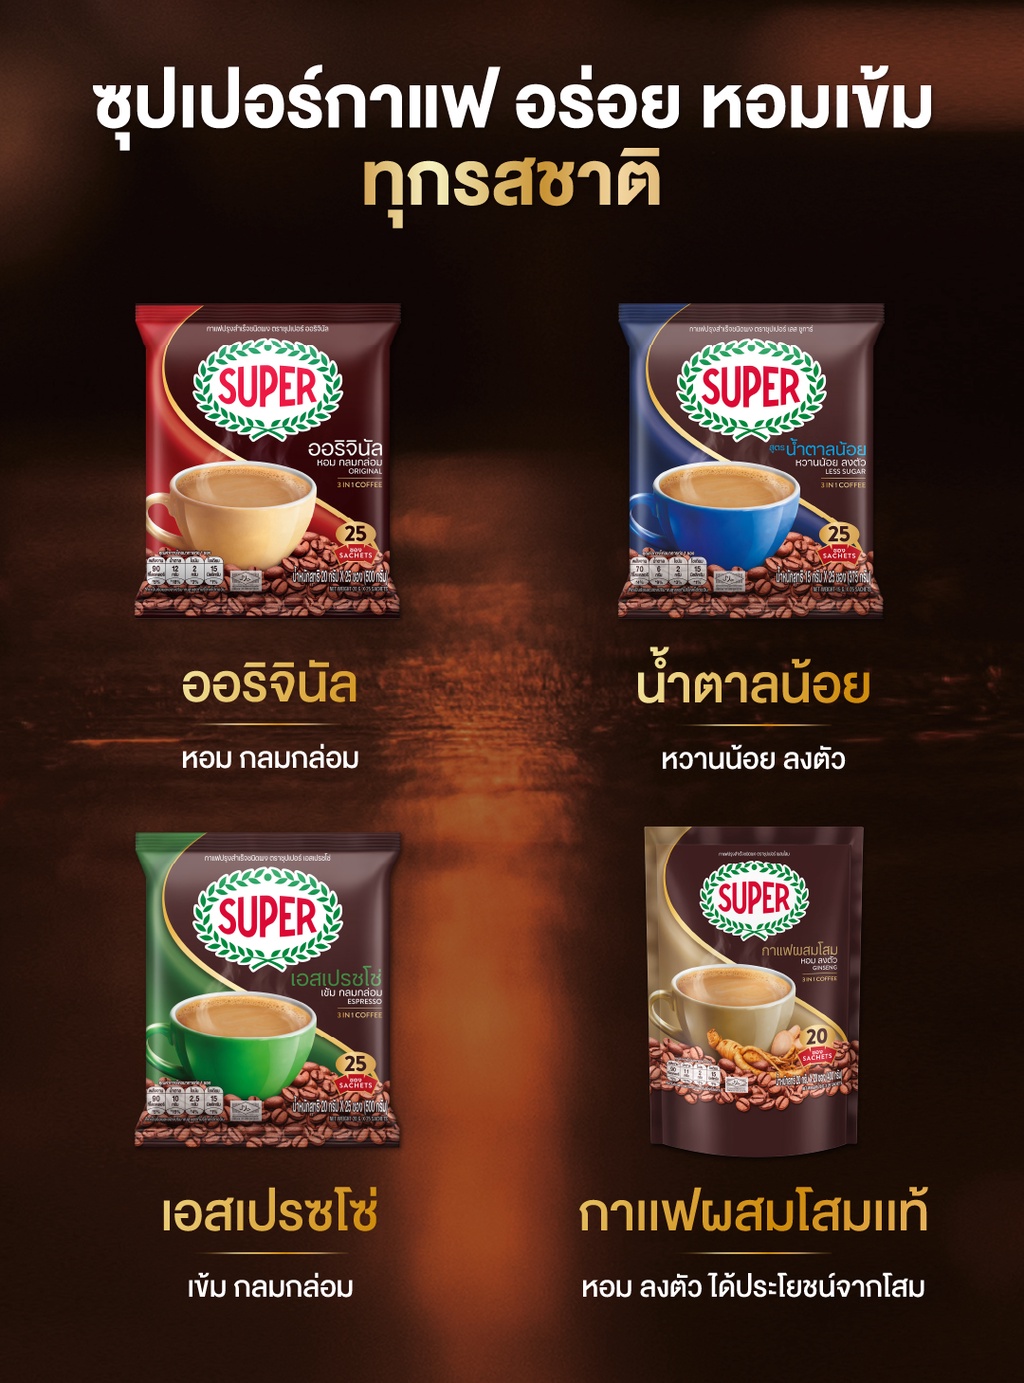 เกี่ยวกับสินค้า SUPER Instant Coffee 3in1 ซุปเปอร์กาแฟ 3 อิน 1